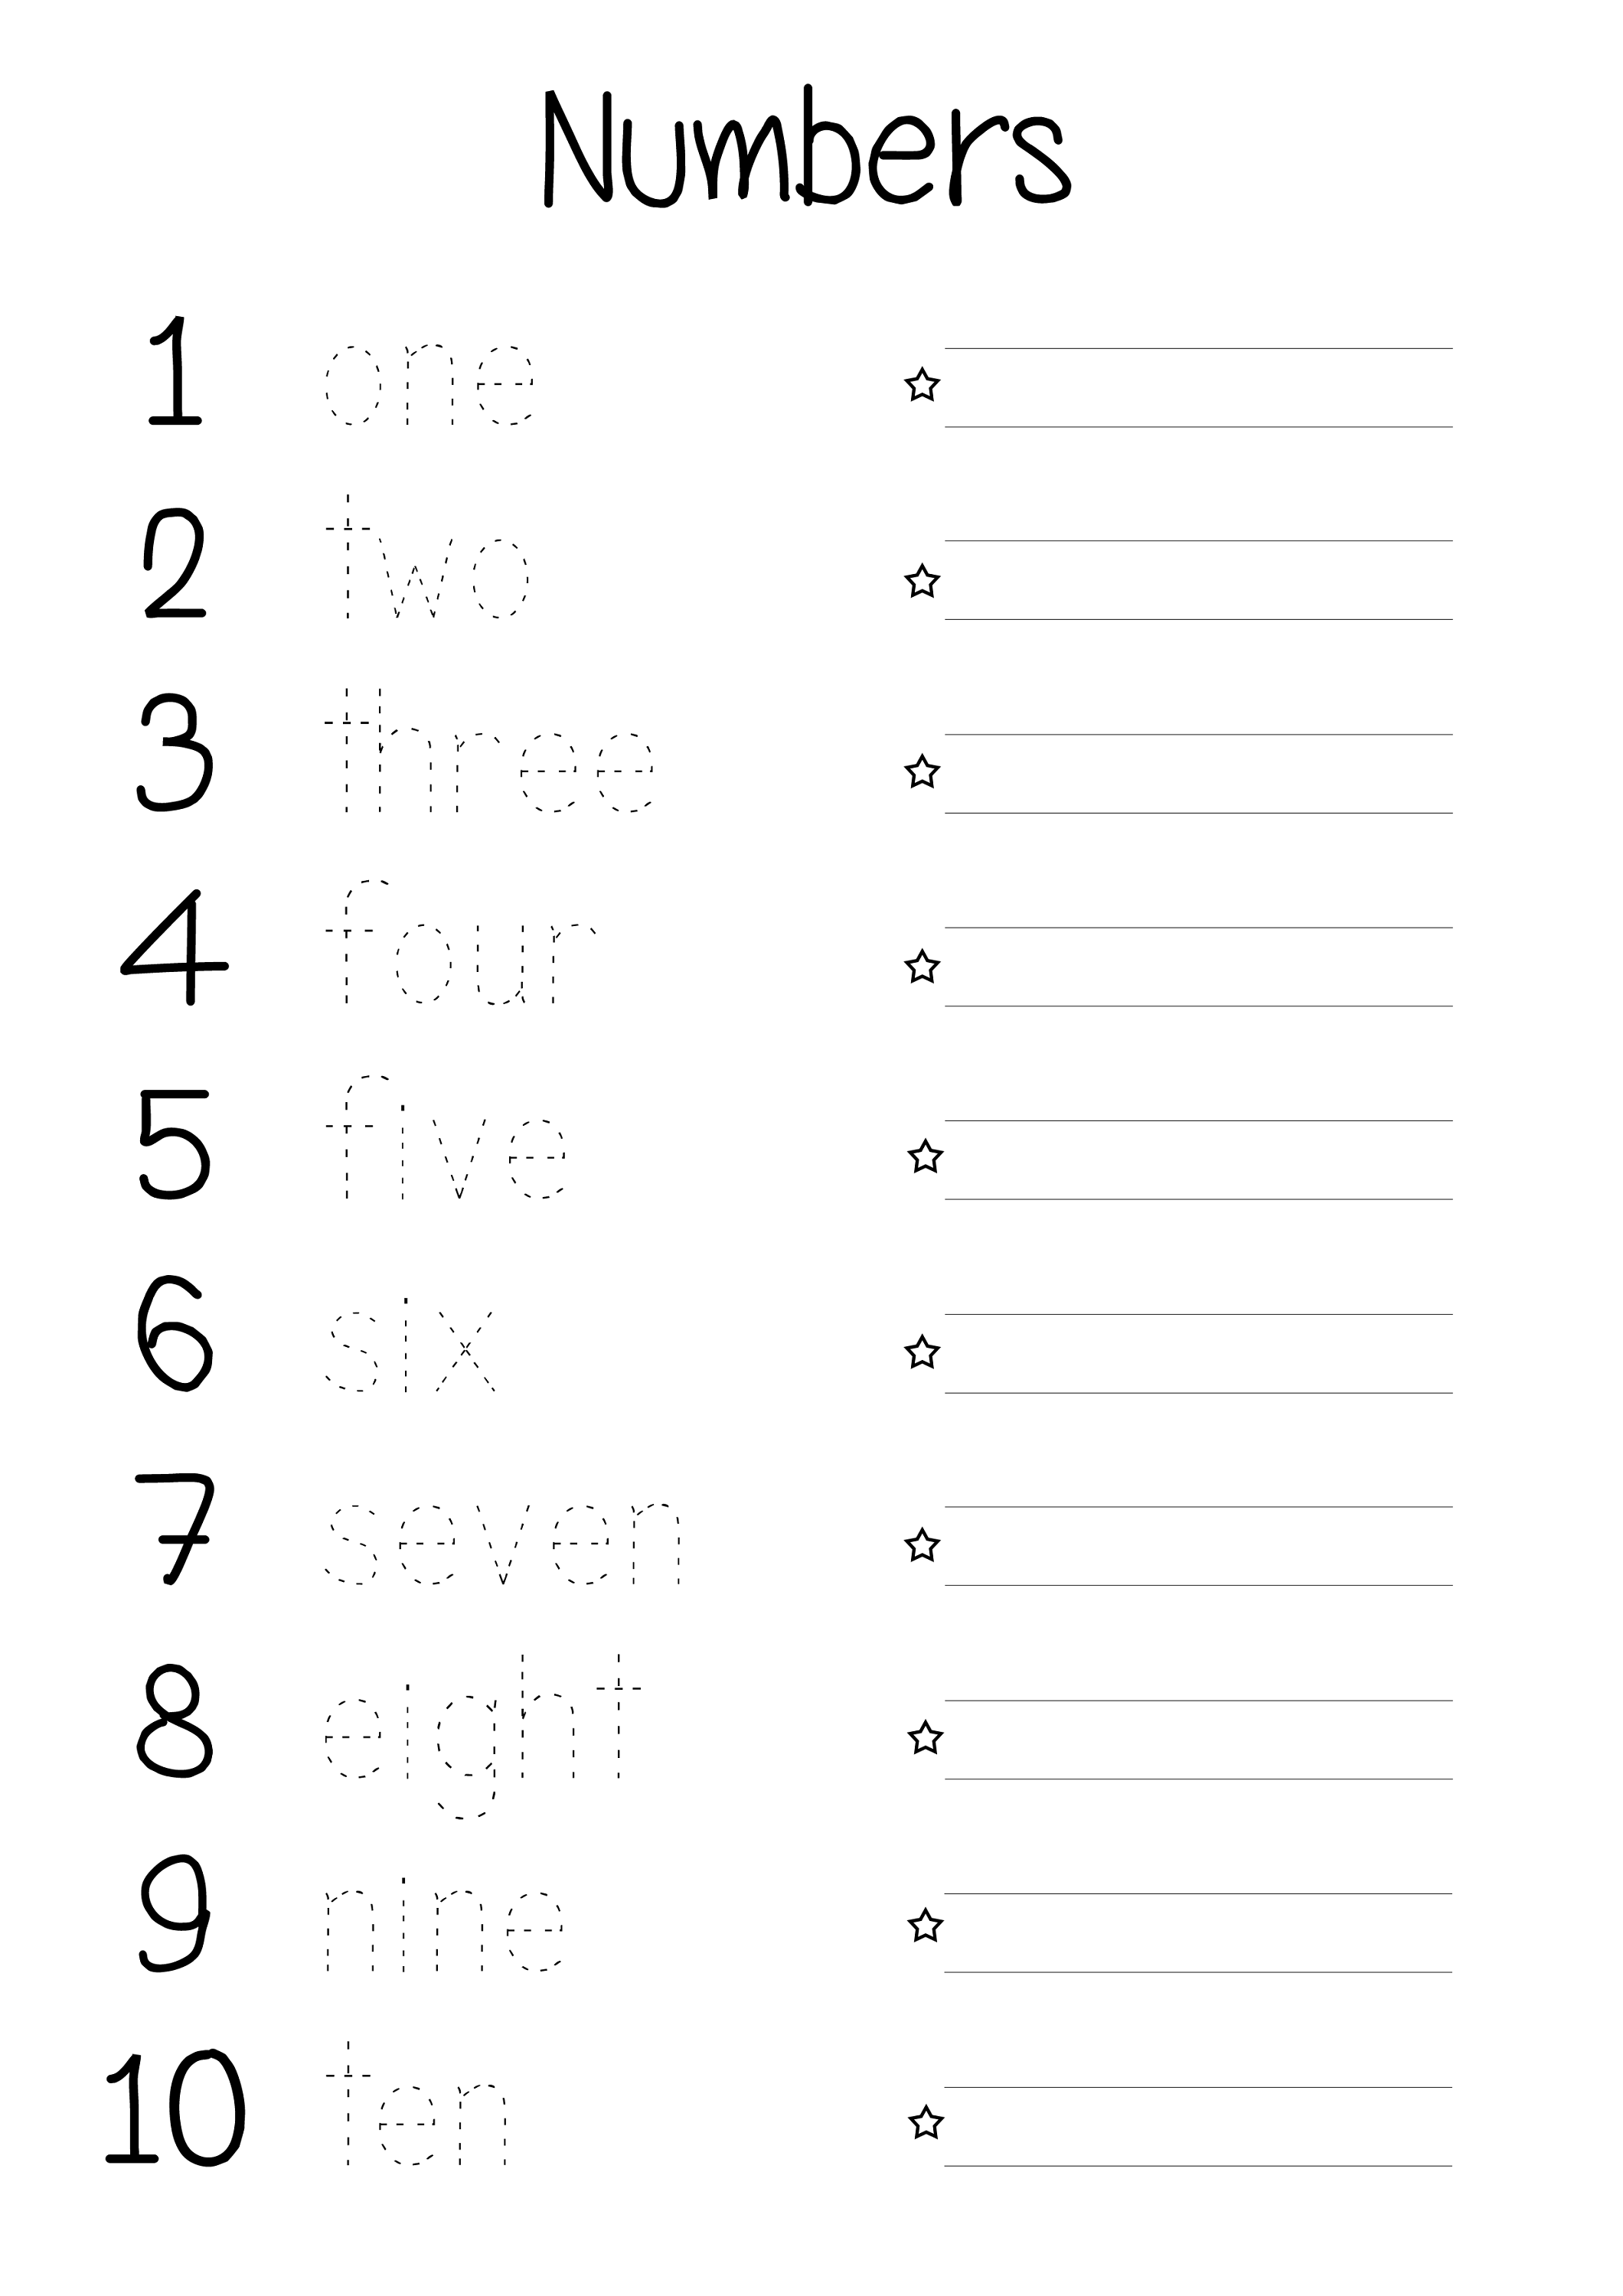 Writing Numbers As Words Worksheet